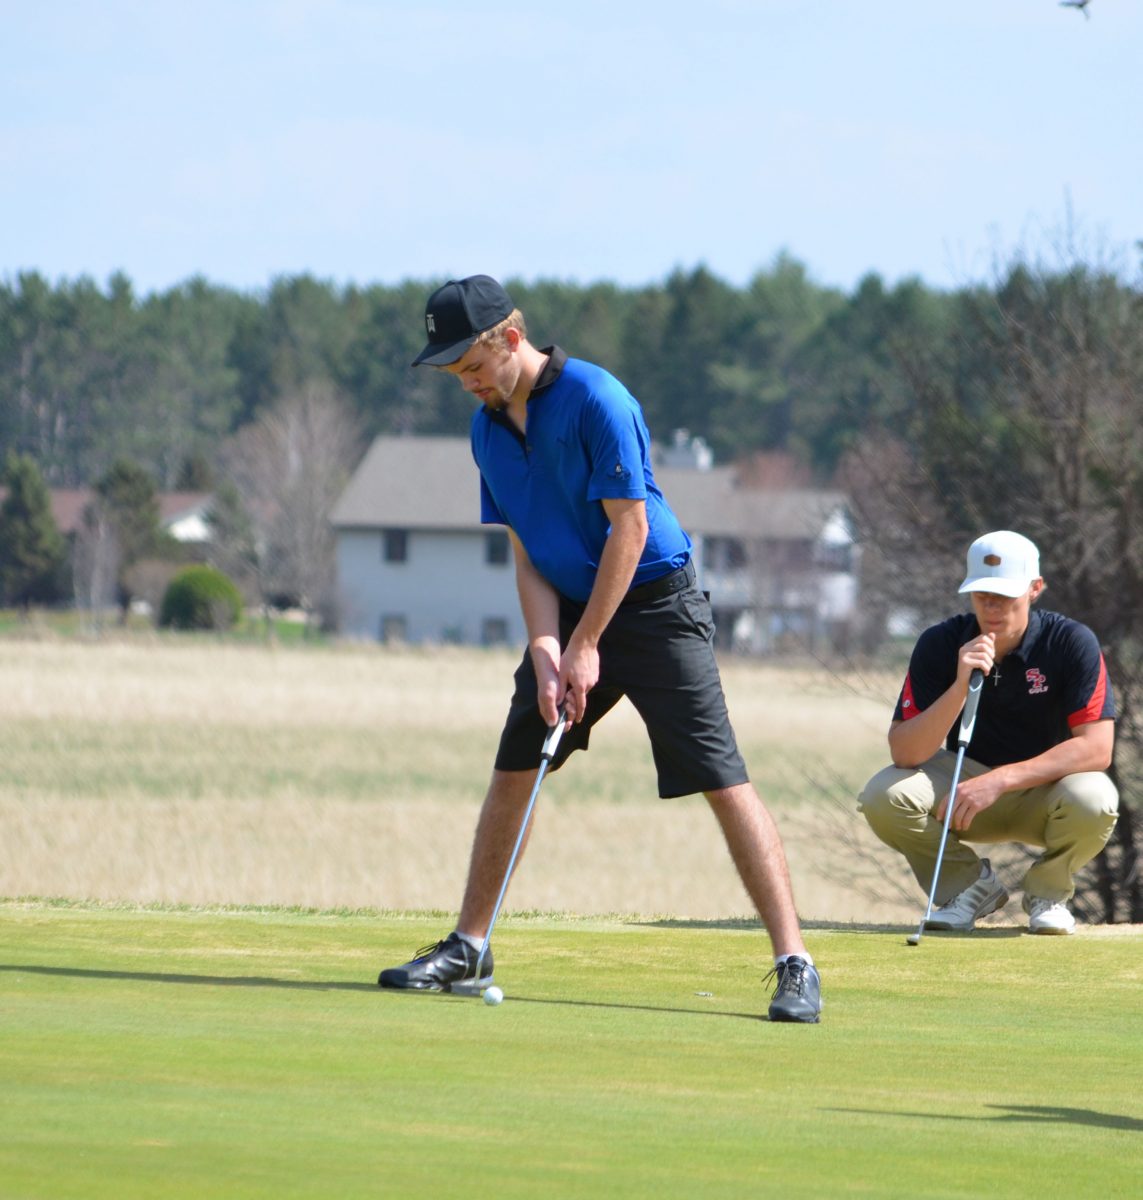 Merrill golf improves at home meet